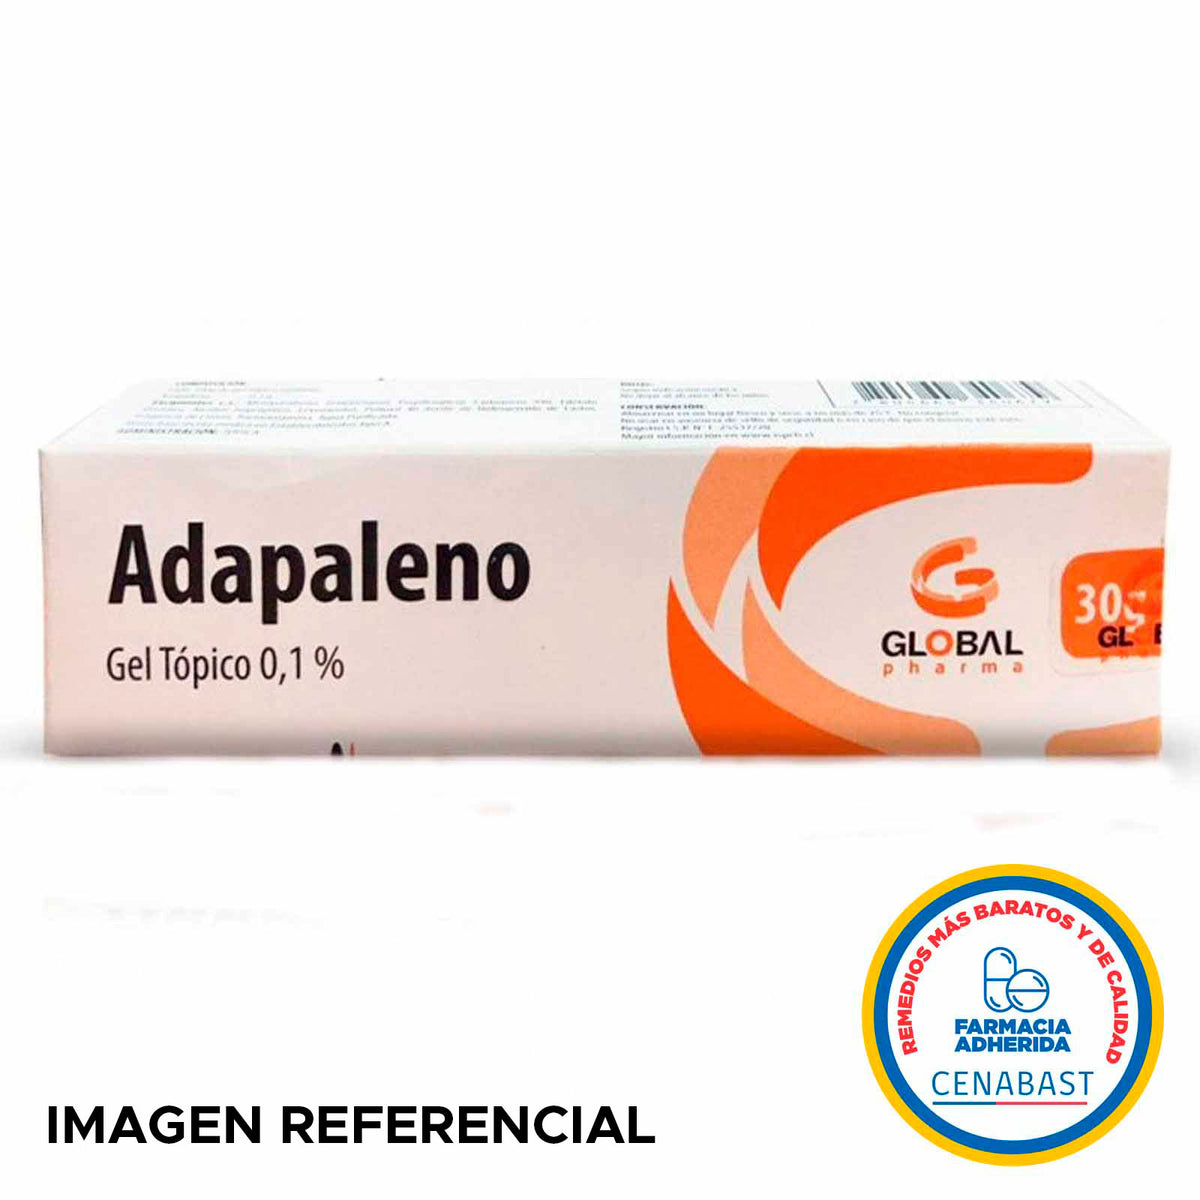 Adapaleno Gel tópico 0,1% Producto Cenabast